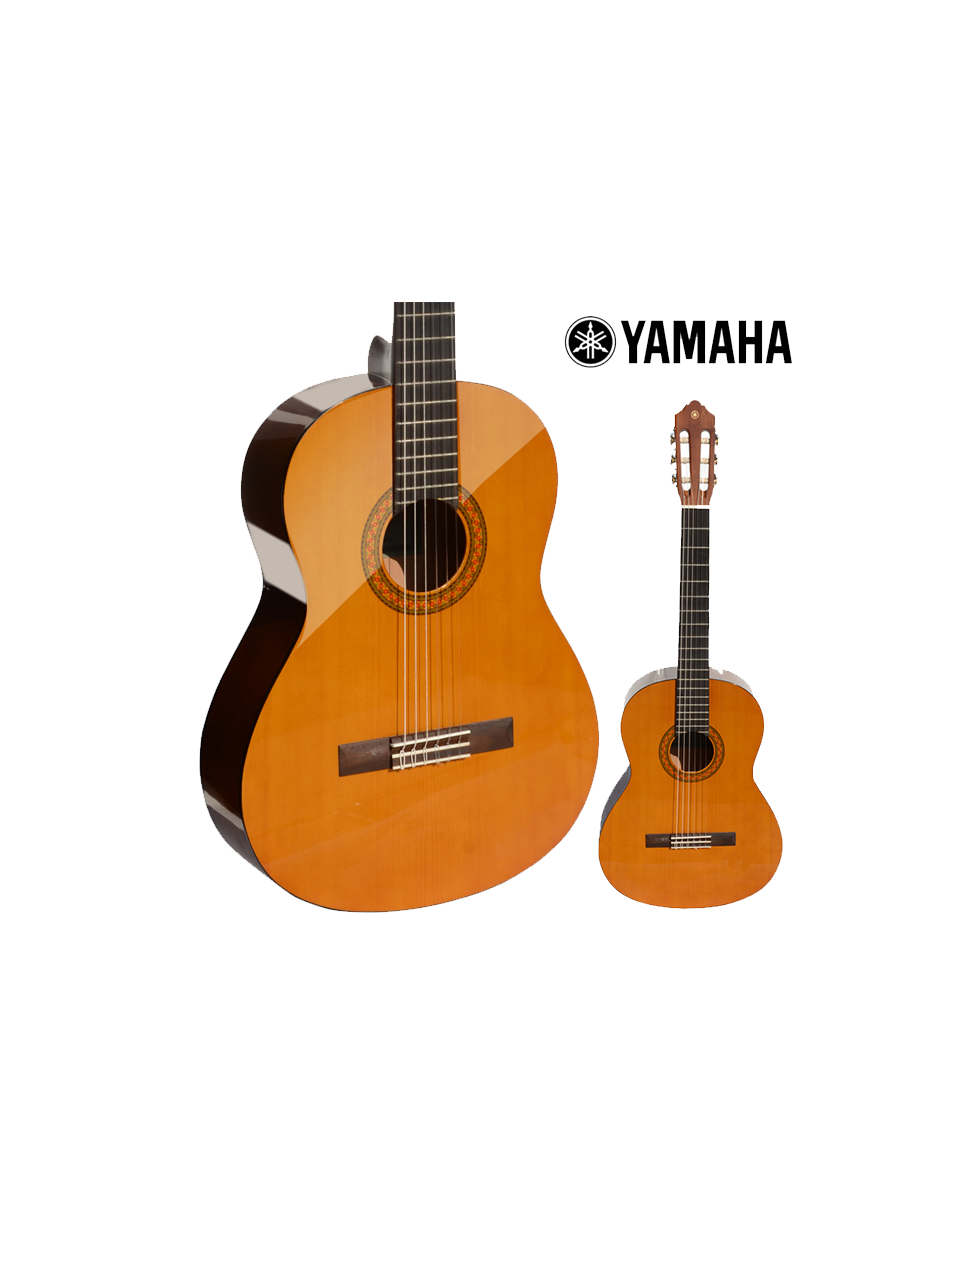 Yamaha-Guitar-Classic-CG142C.png